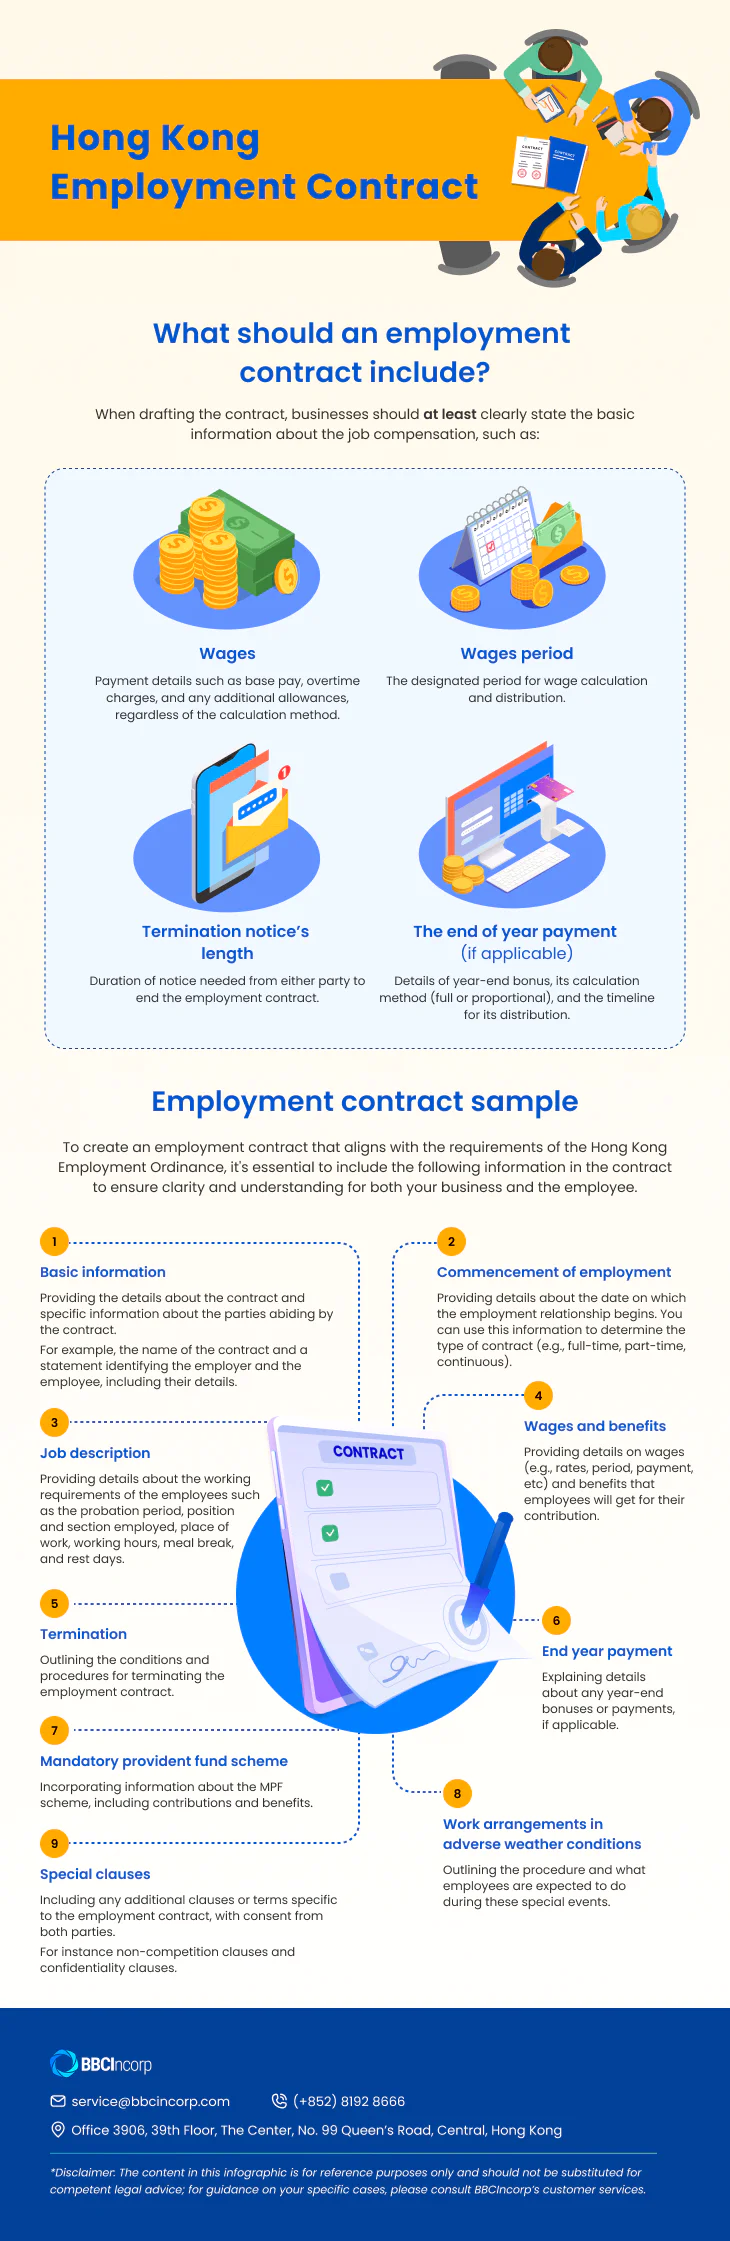 Hong Kong Employment Contract